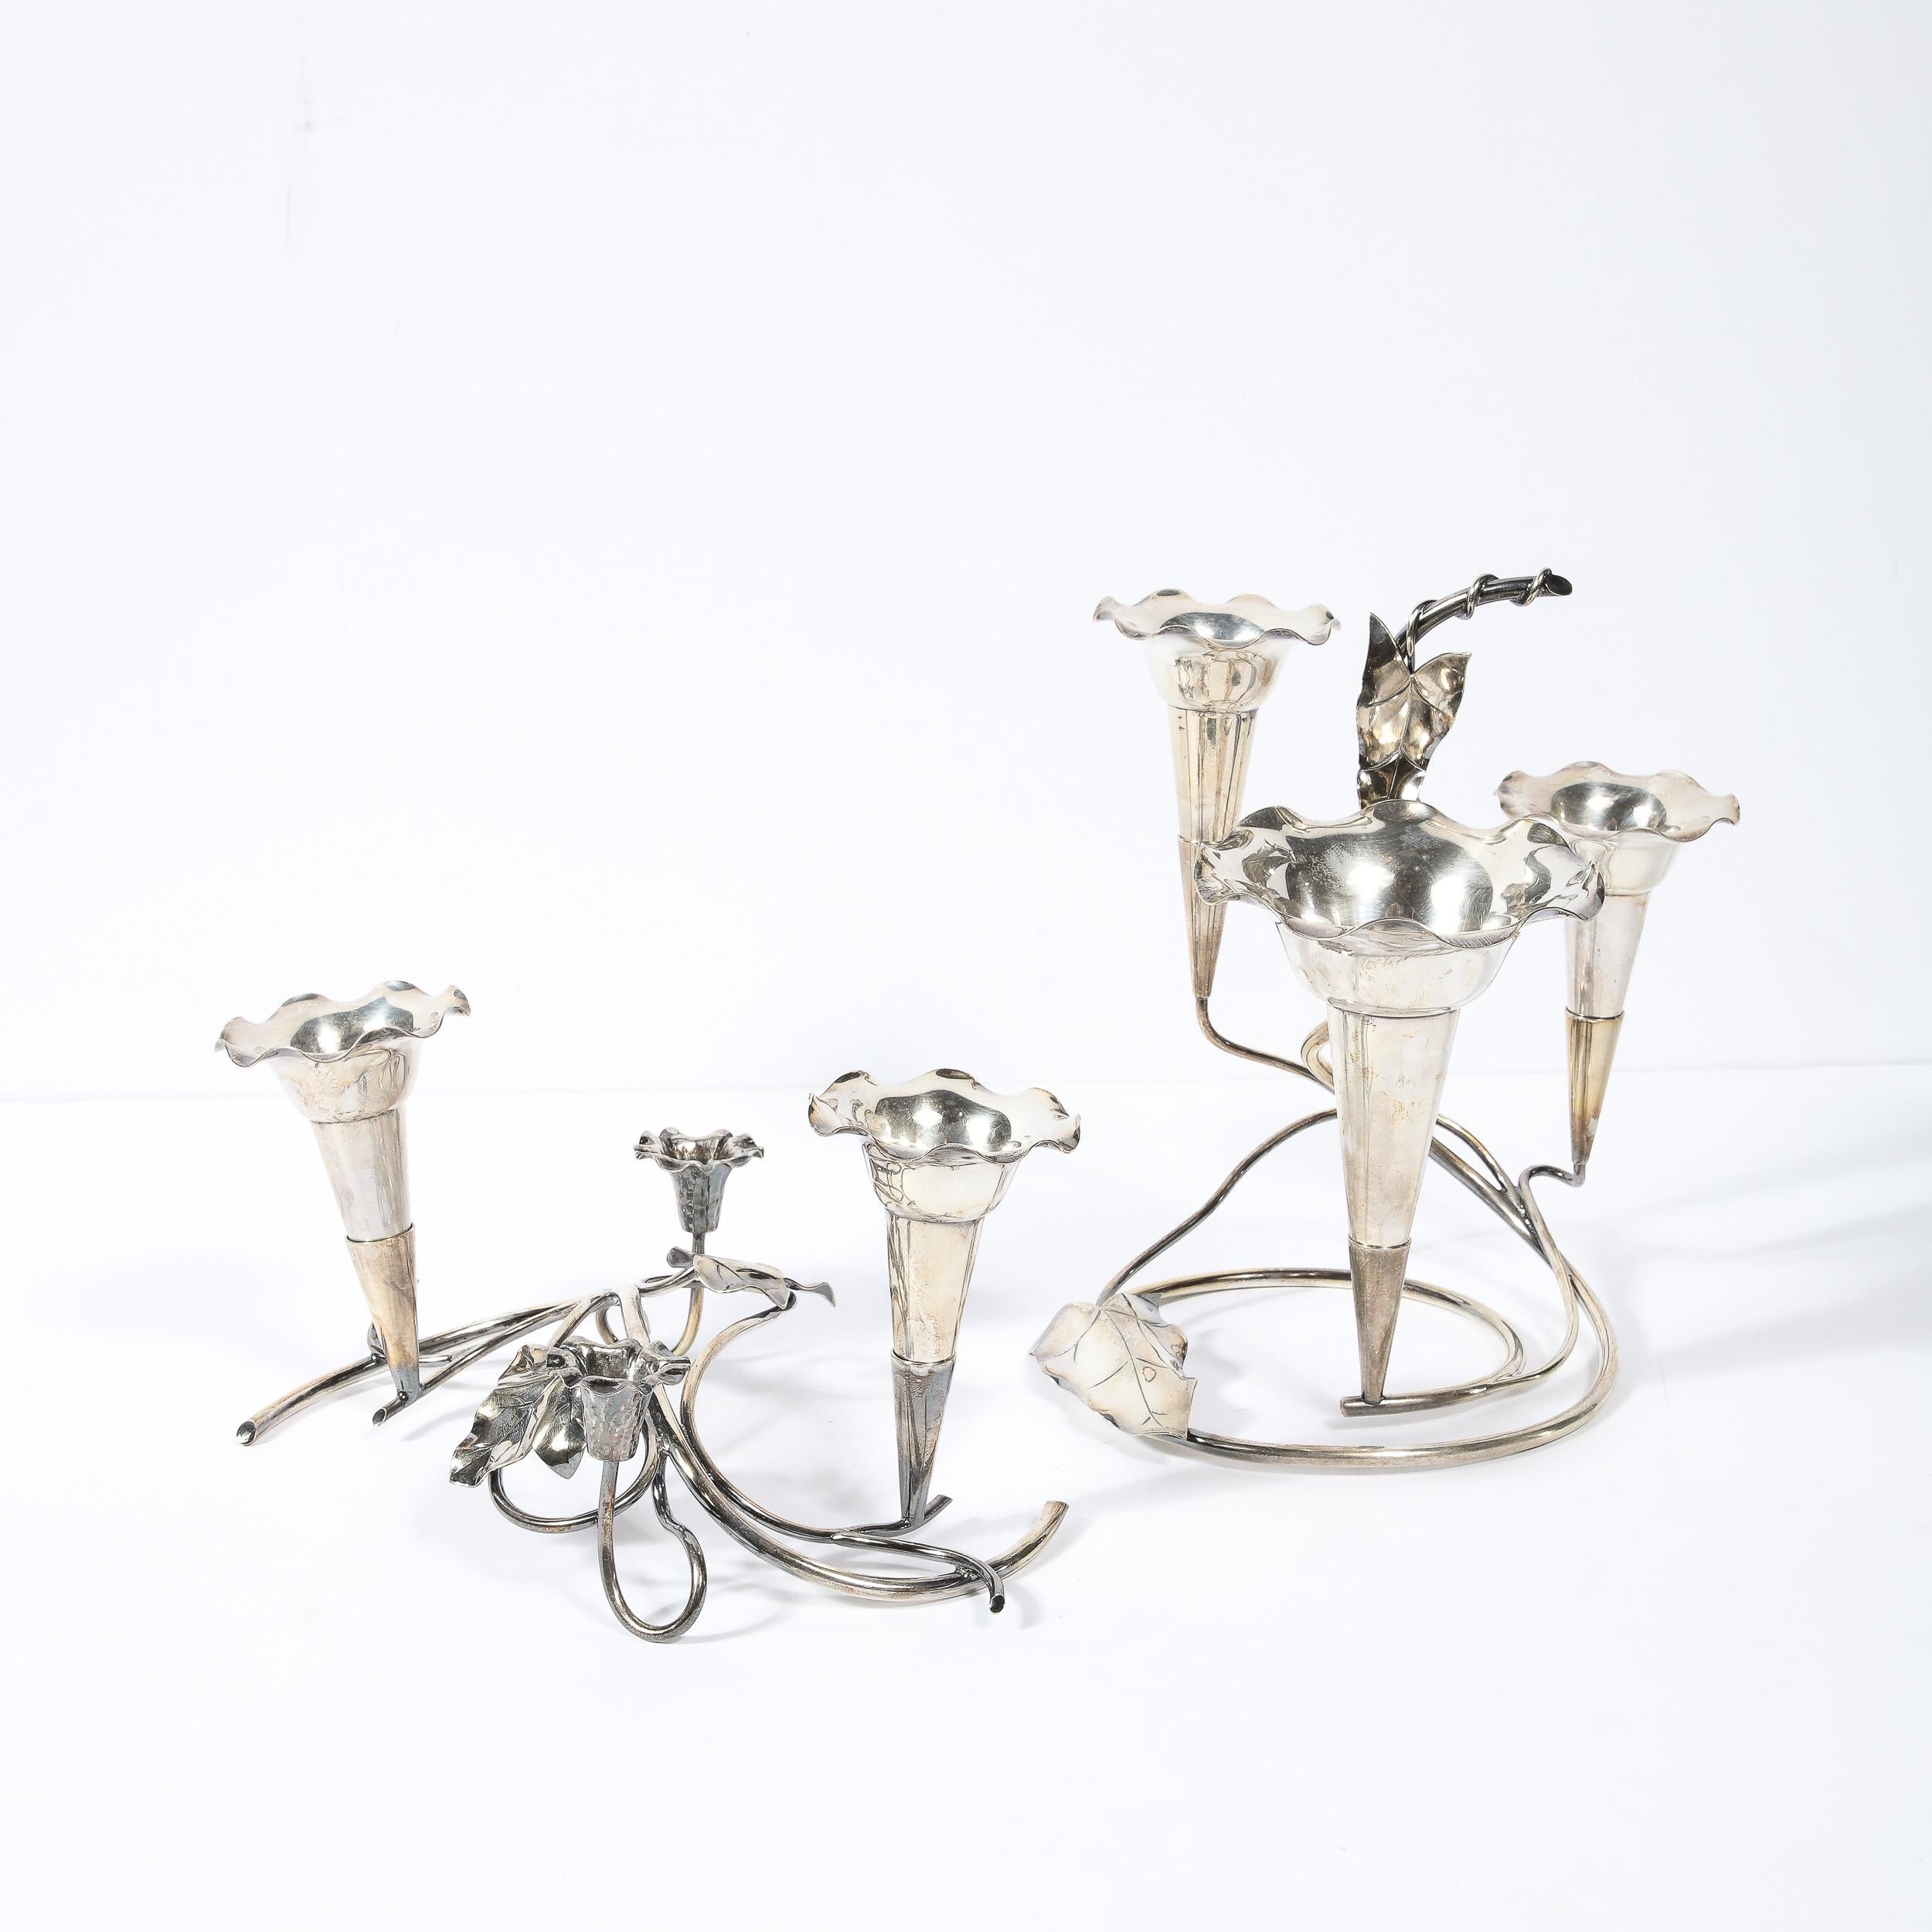 Cette étonnante et sculpturale paire de chandeliers Art Nouveau en métal argenté a été réalisée aux États-Unis vers 1915. Ils sont dotés d'une base composée de vignes stylisées aux formes curvilignes tourbillonnantes (un leitmotiv dans le design Art